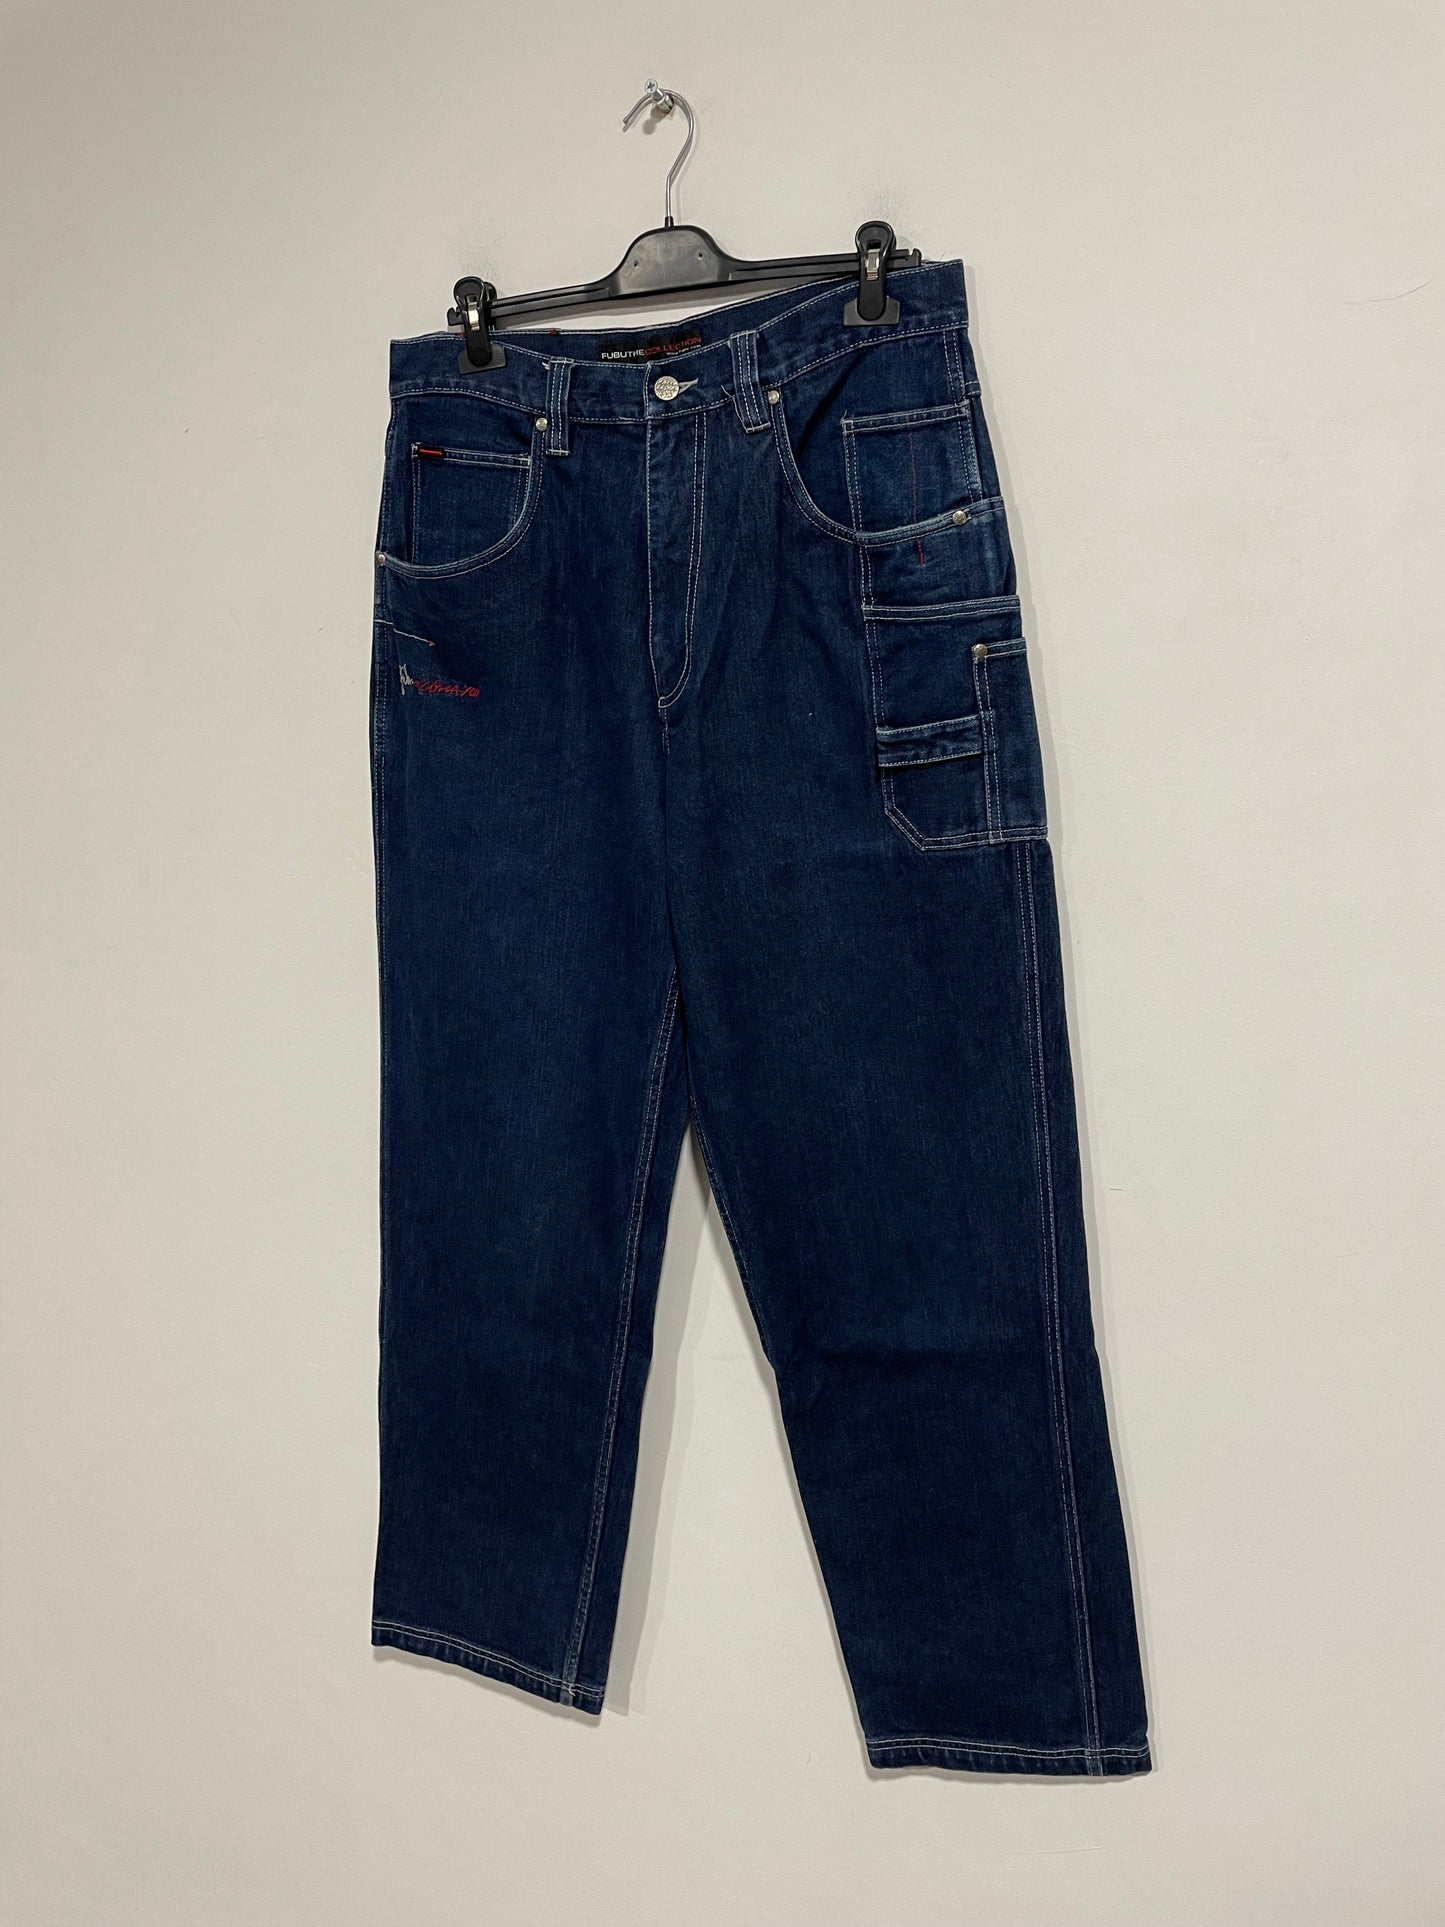 Raro jeans baggy FUBU Circa anni 90 (D538)